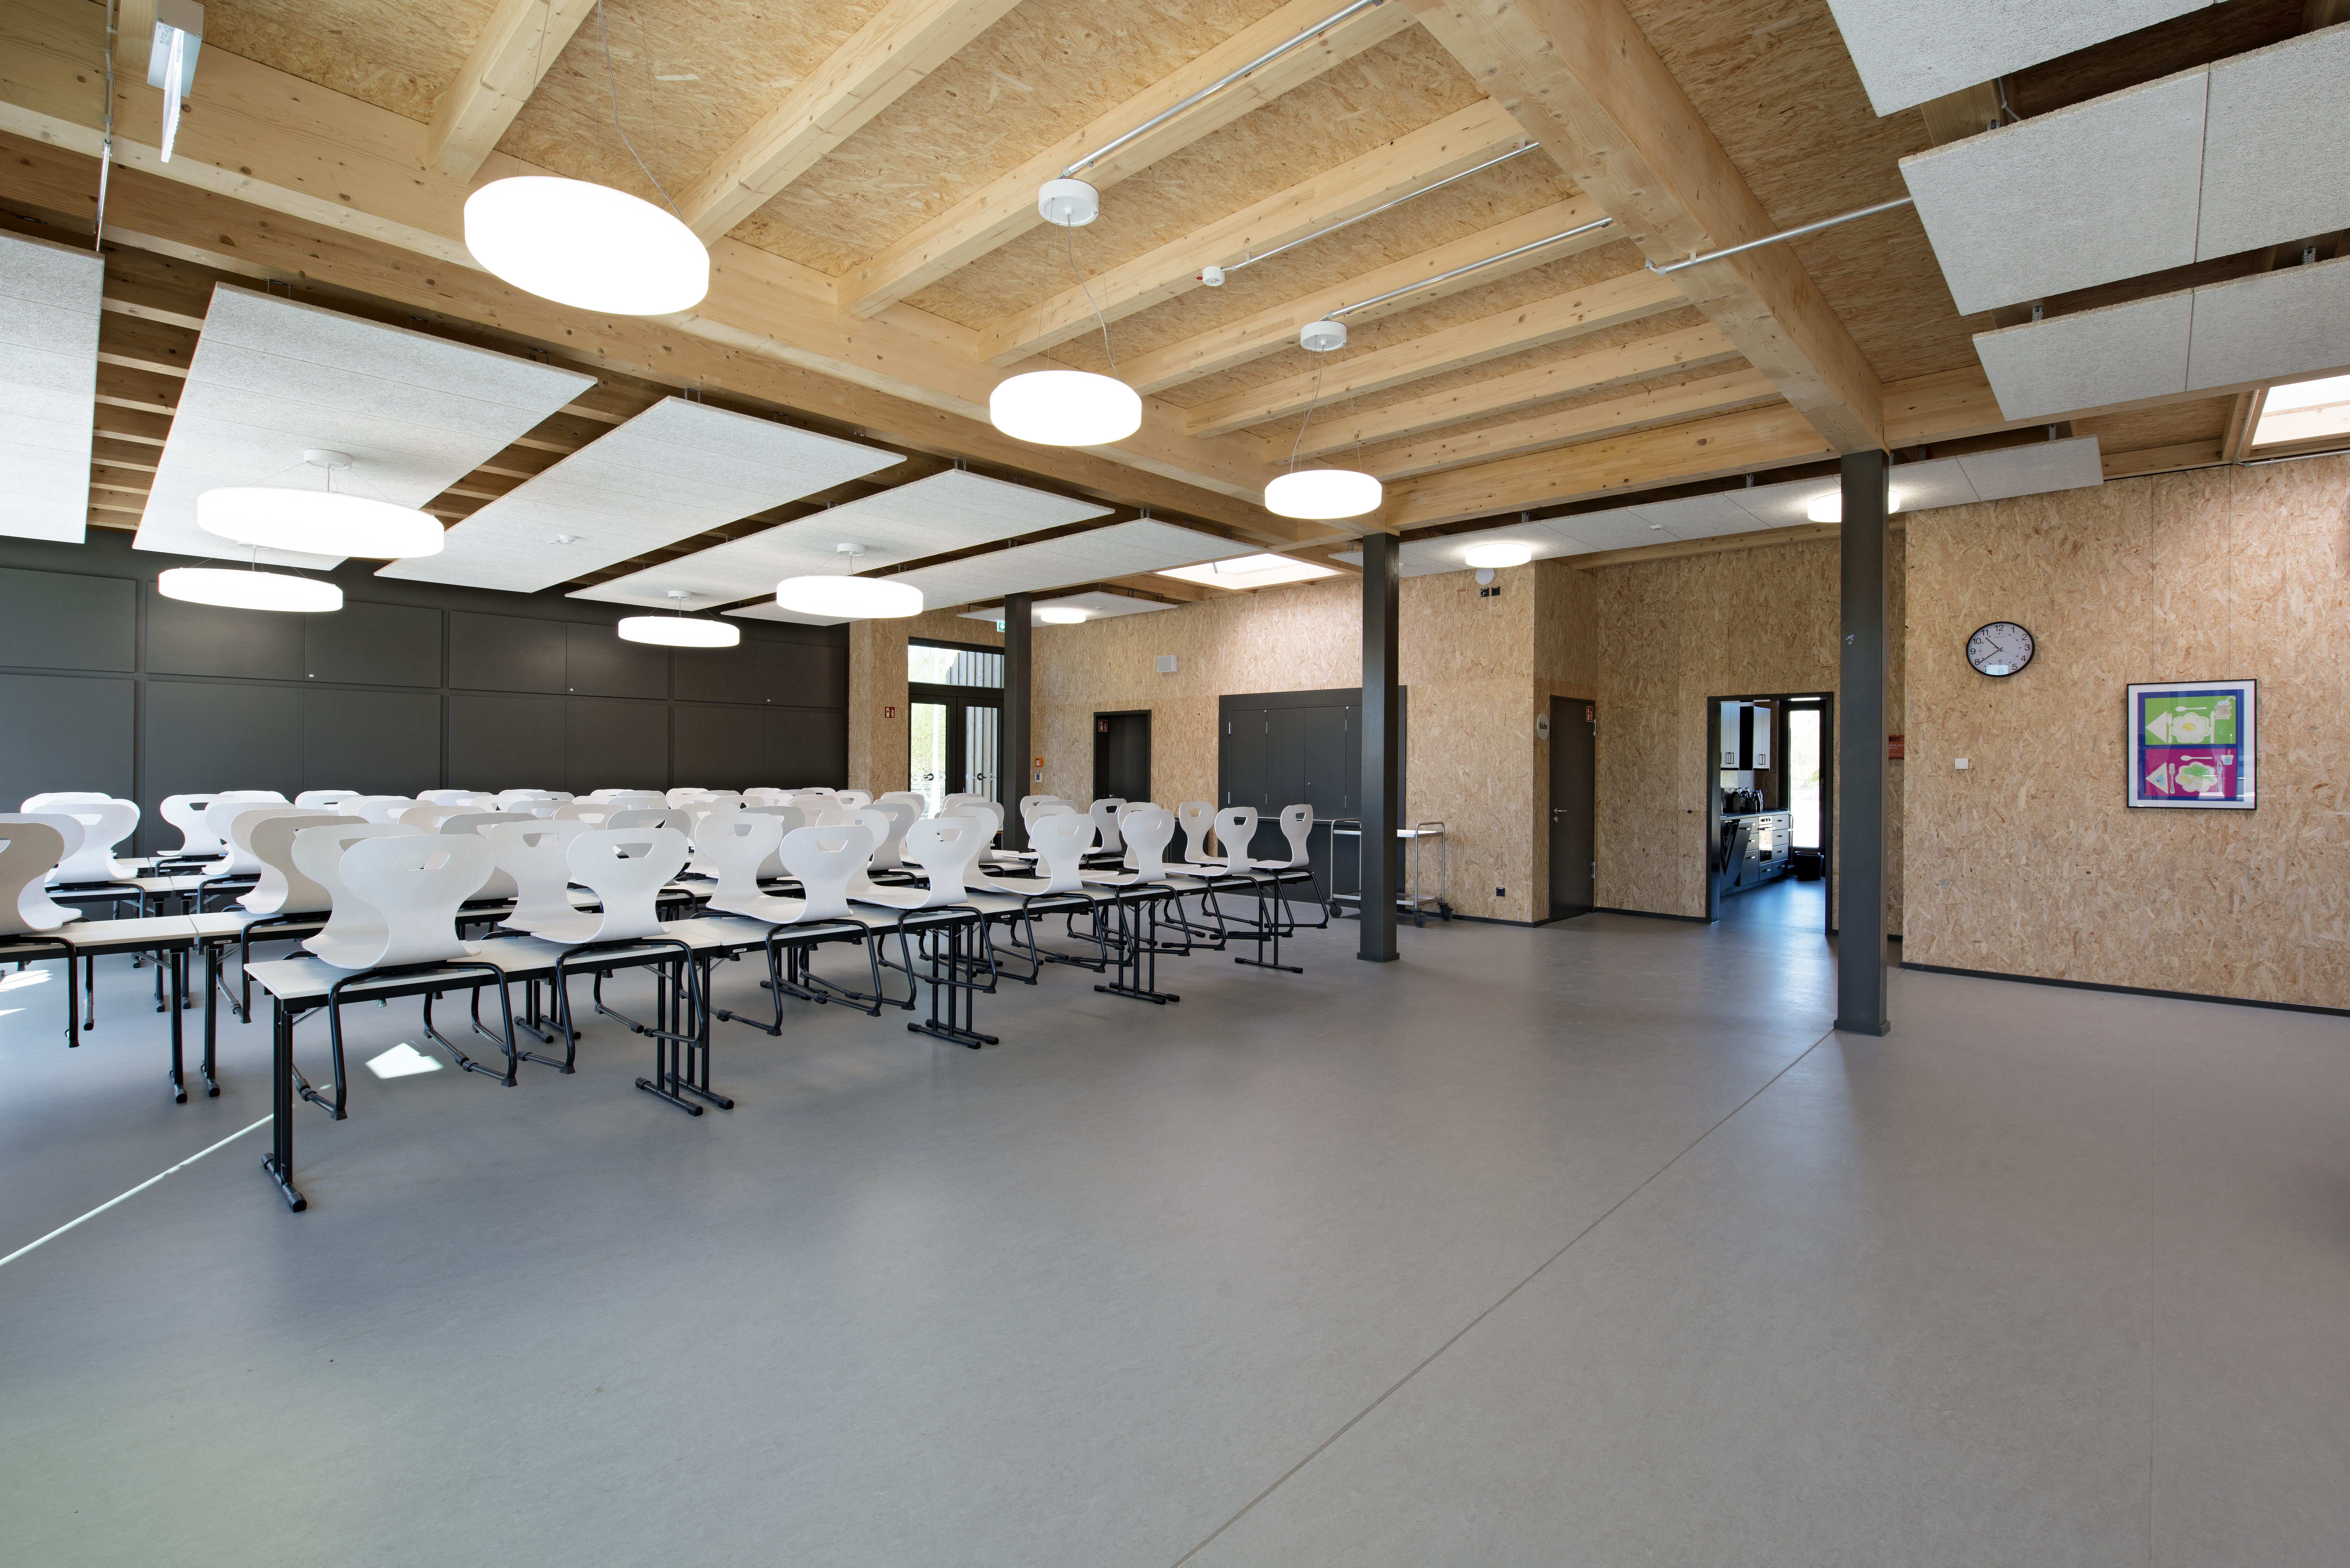 Nowy budynek Szkoły im. Roberta Lansemanna w Wismarze. Autor ilustracji: © Jana Sprockhoff